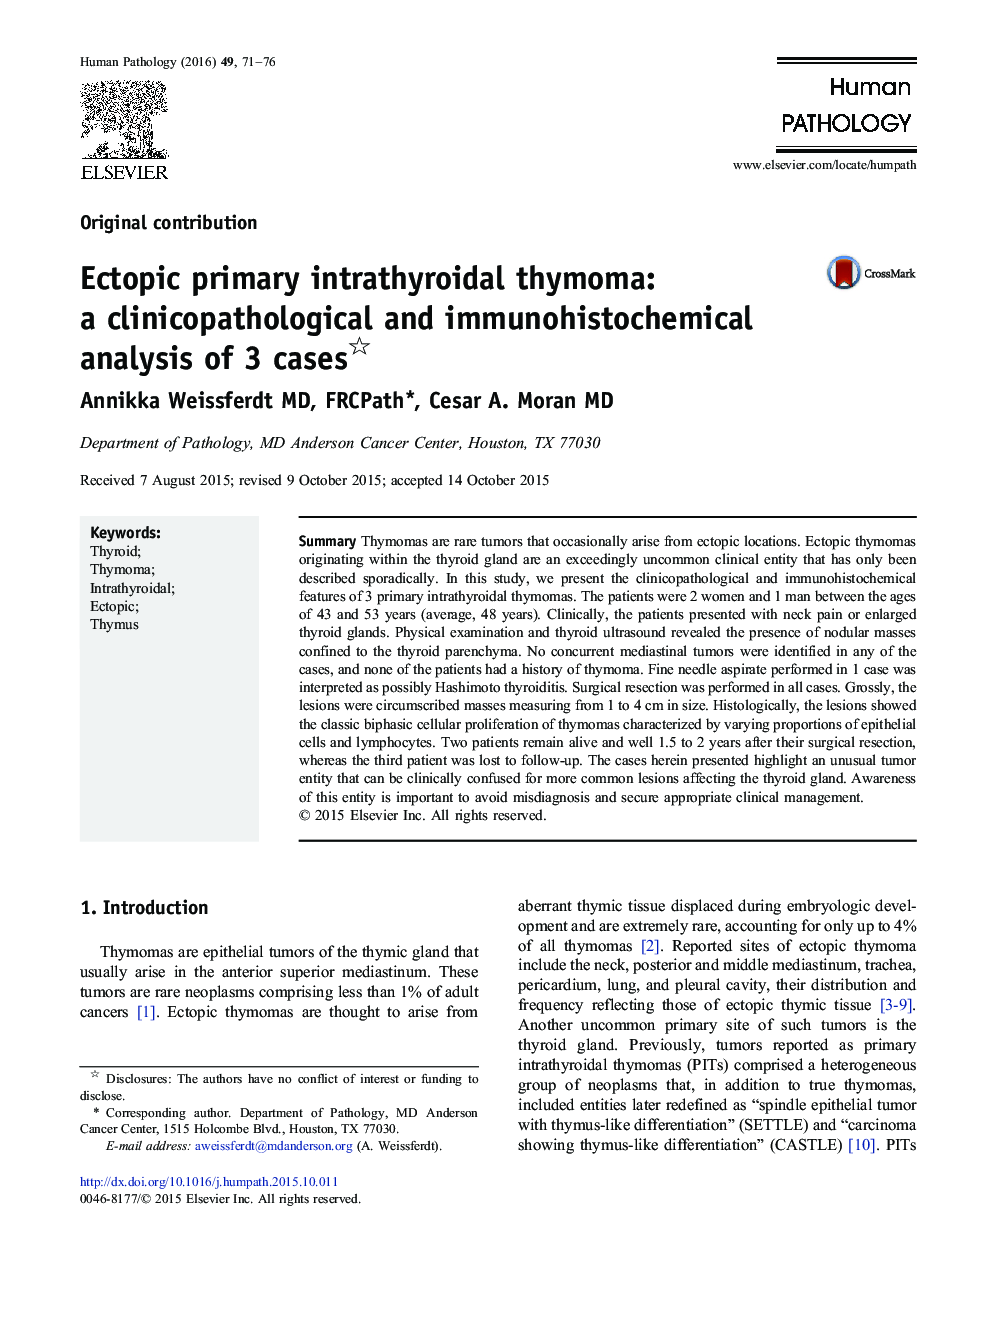 تریما درون تیروئیدولی اولیه تومور غیرطبیعی: یک بررسی کلینیکوپاتولوژیک و ایمونوهیستوشیمی در 3 مورد 